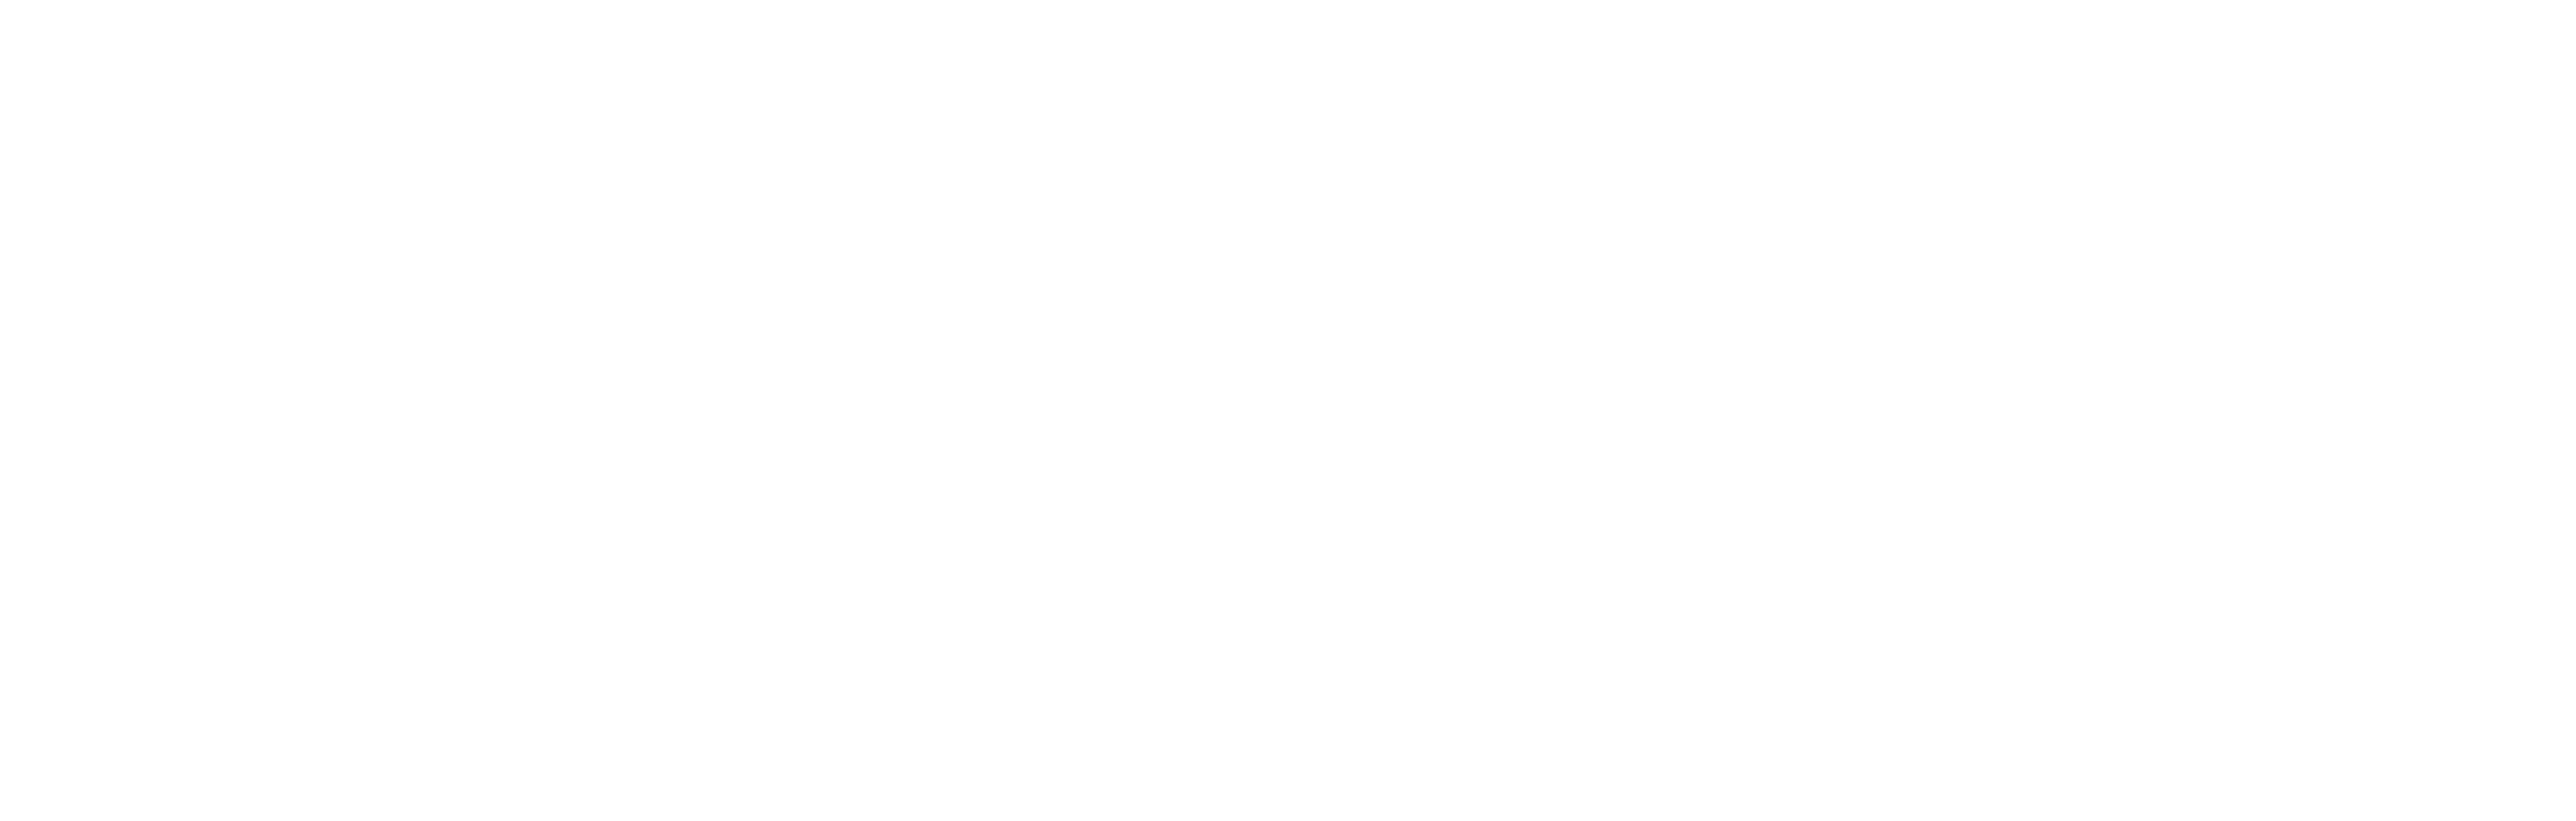 Interior-Units